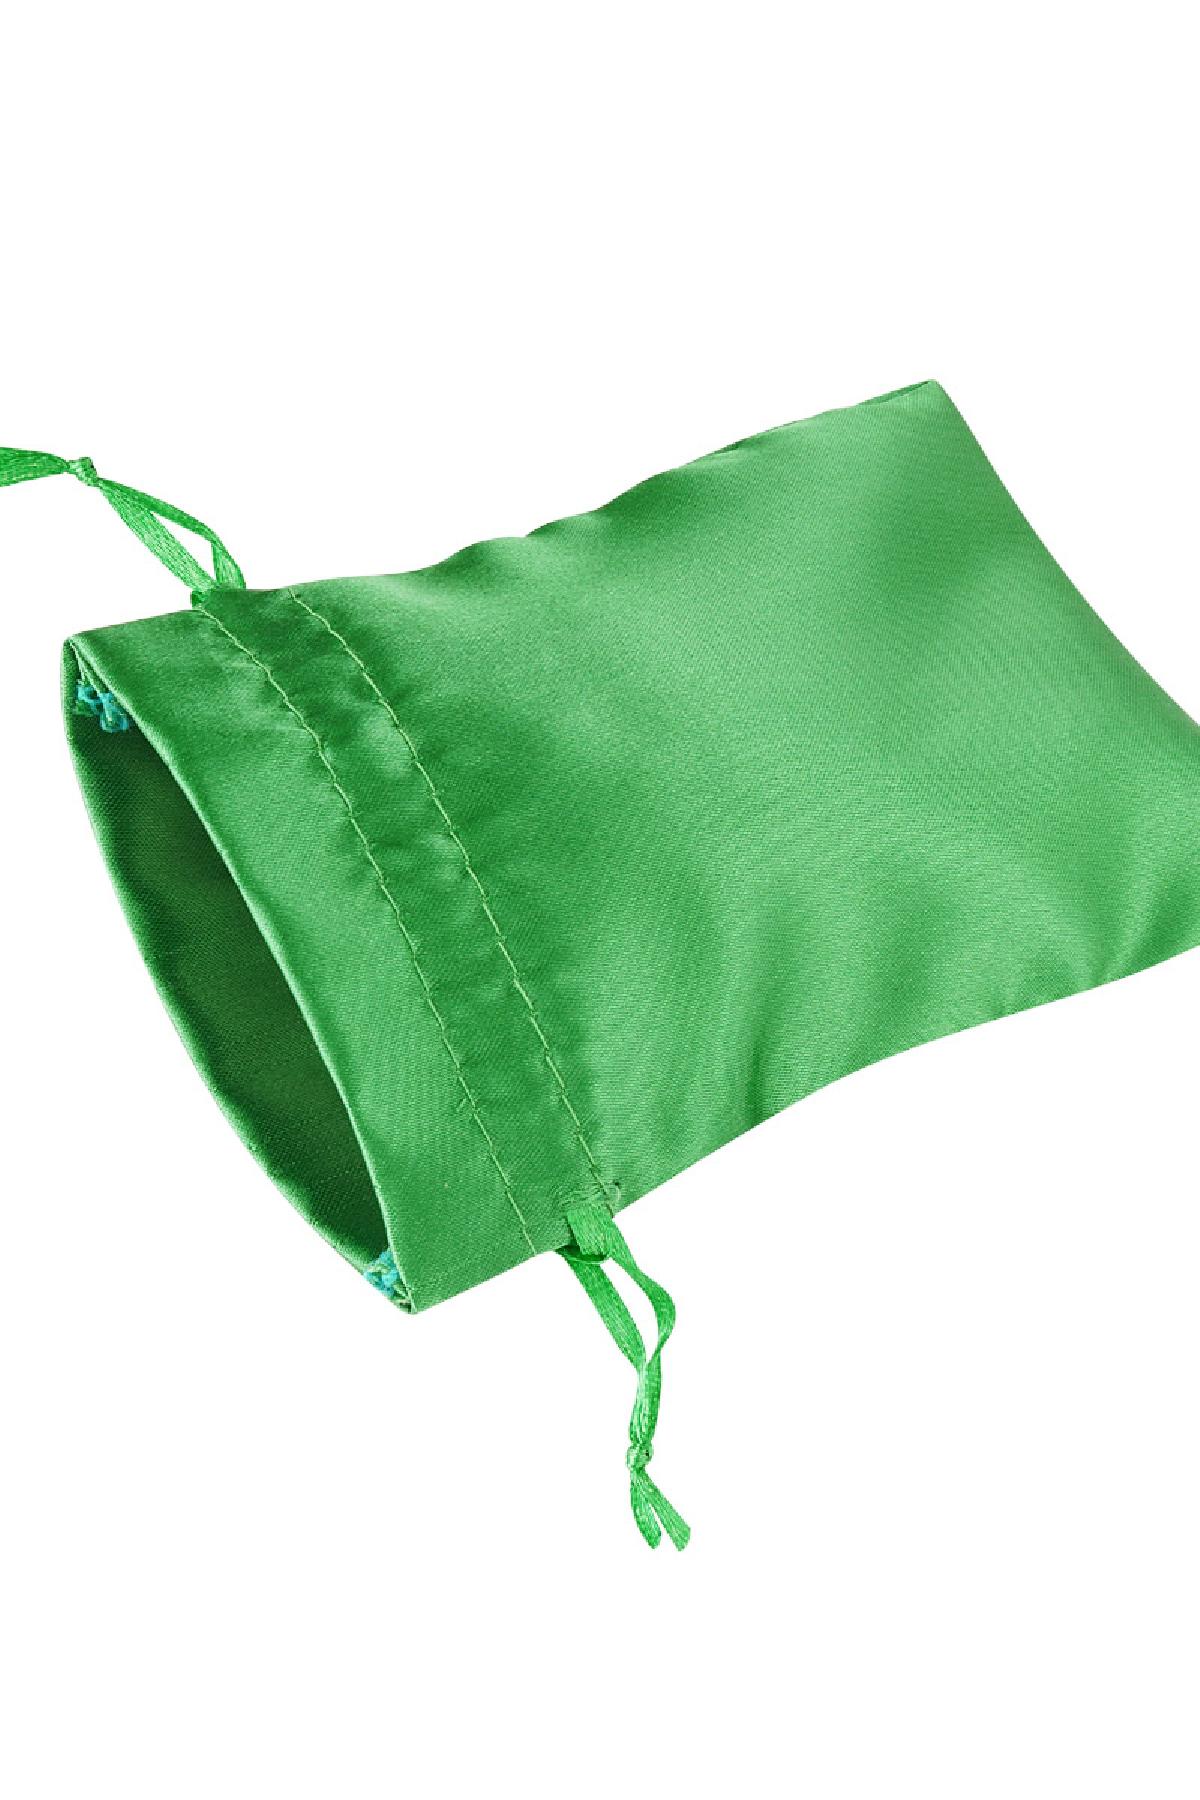 Bolsas para joyería satinadas pequeñas - verde Poliéster h5 Imagen2